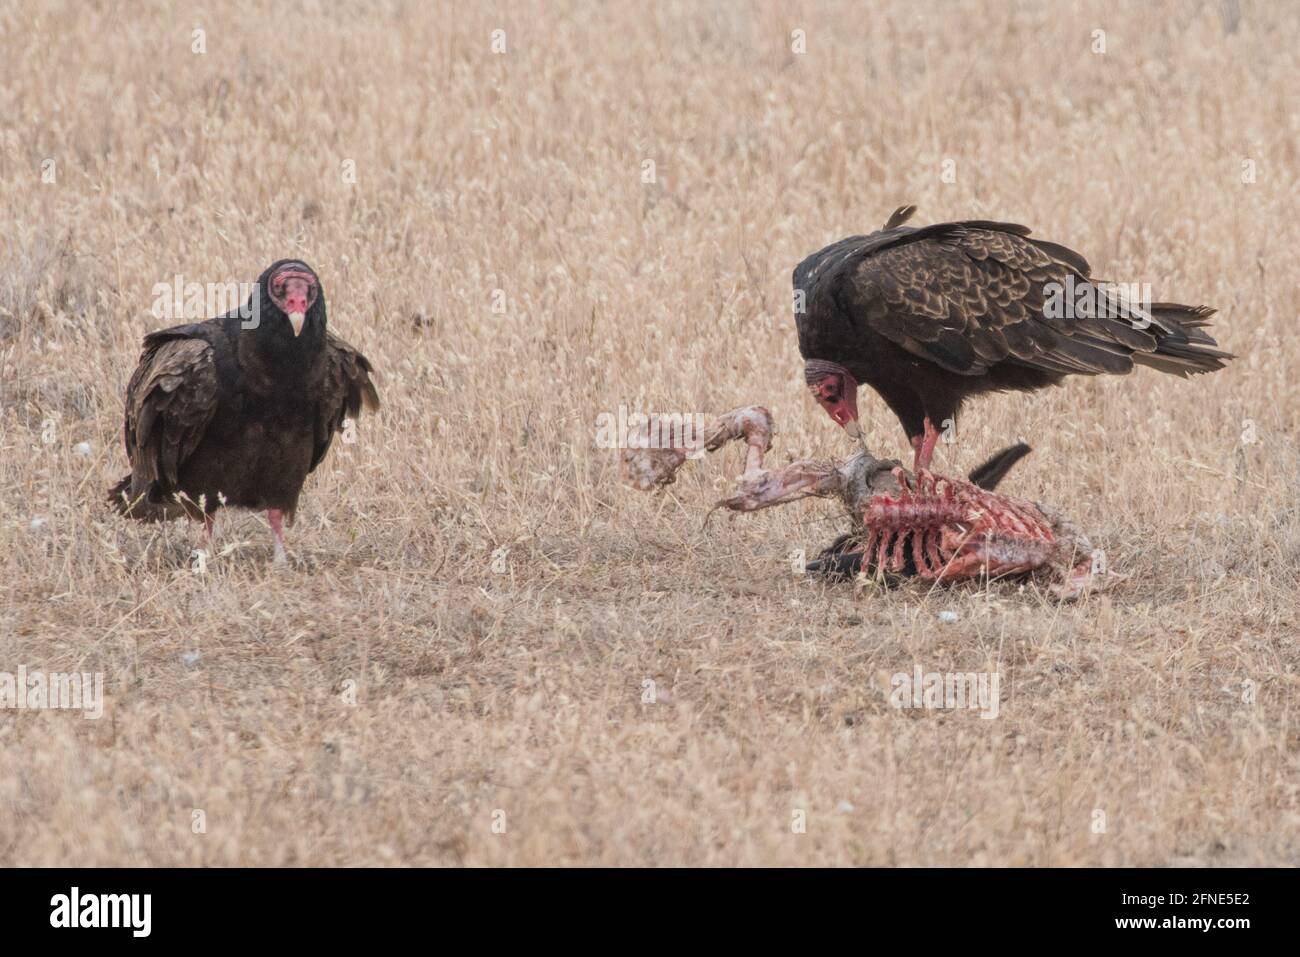 Un paio di avvoltoi tacchino (Cathartes aura) vendetta un animale morto in una regione arida della California. Foto Stock